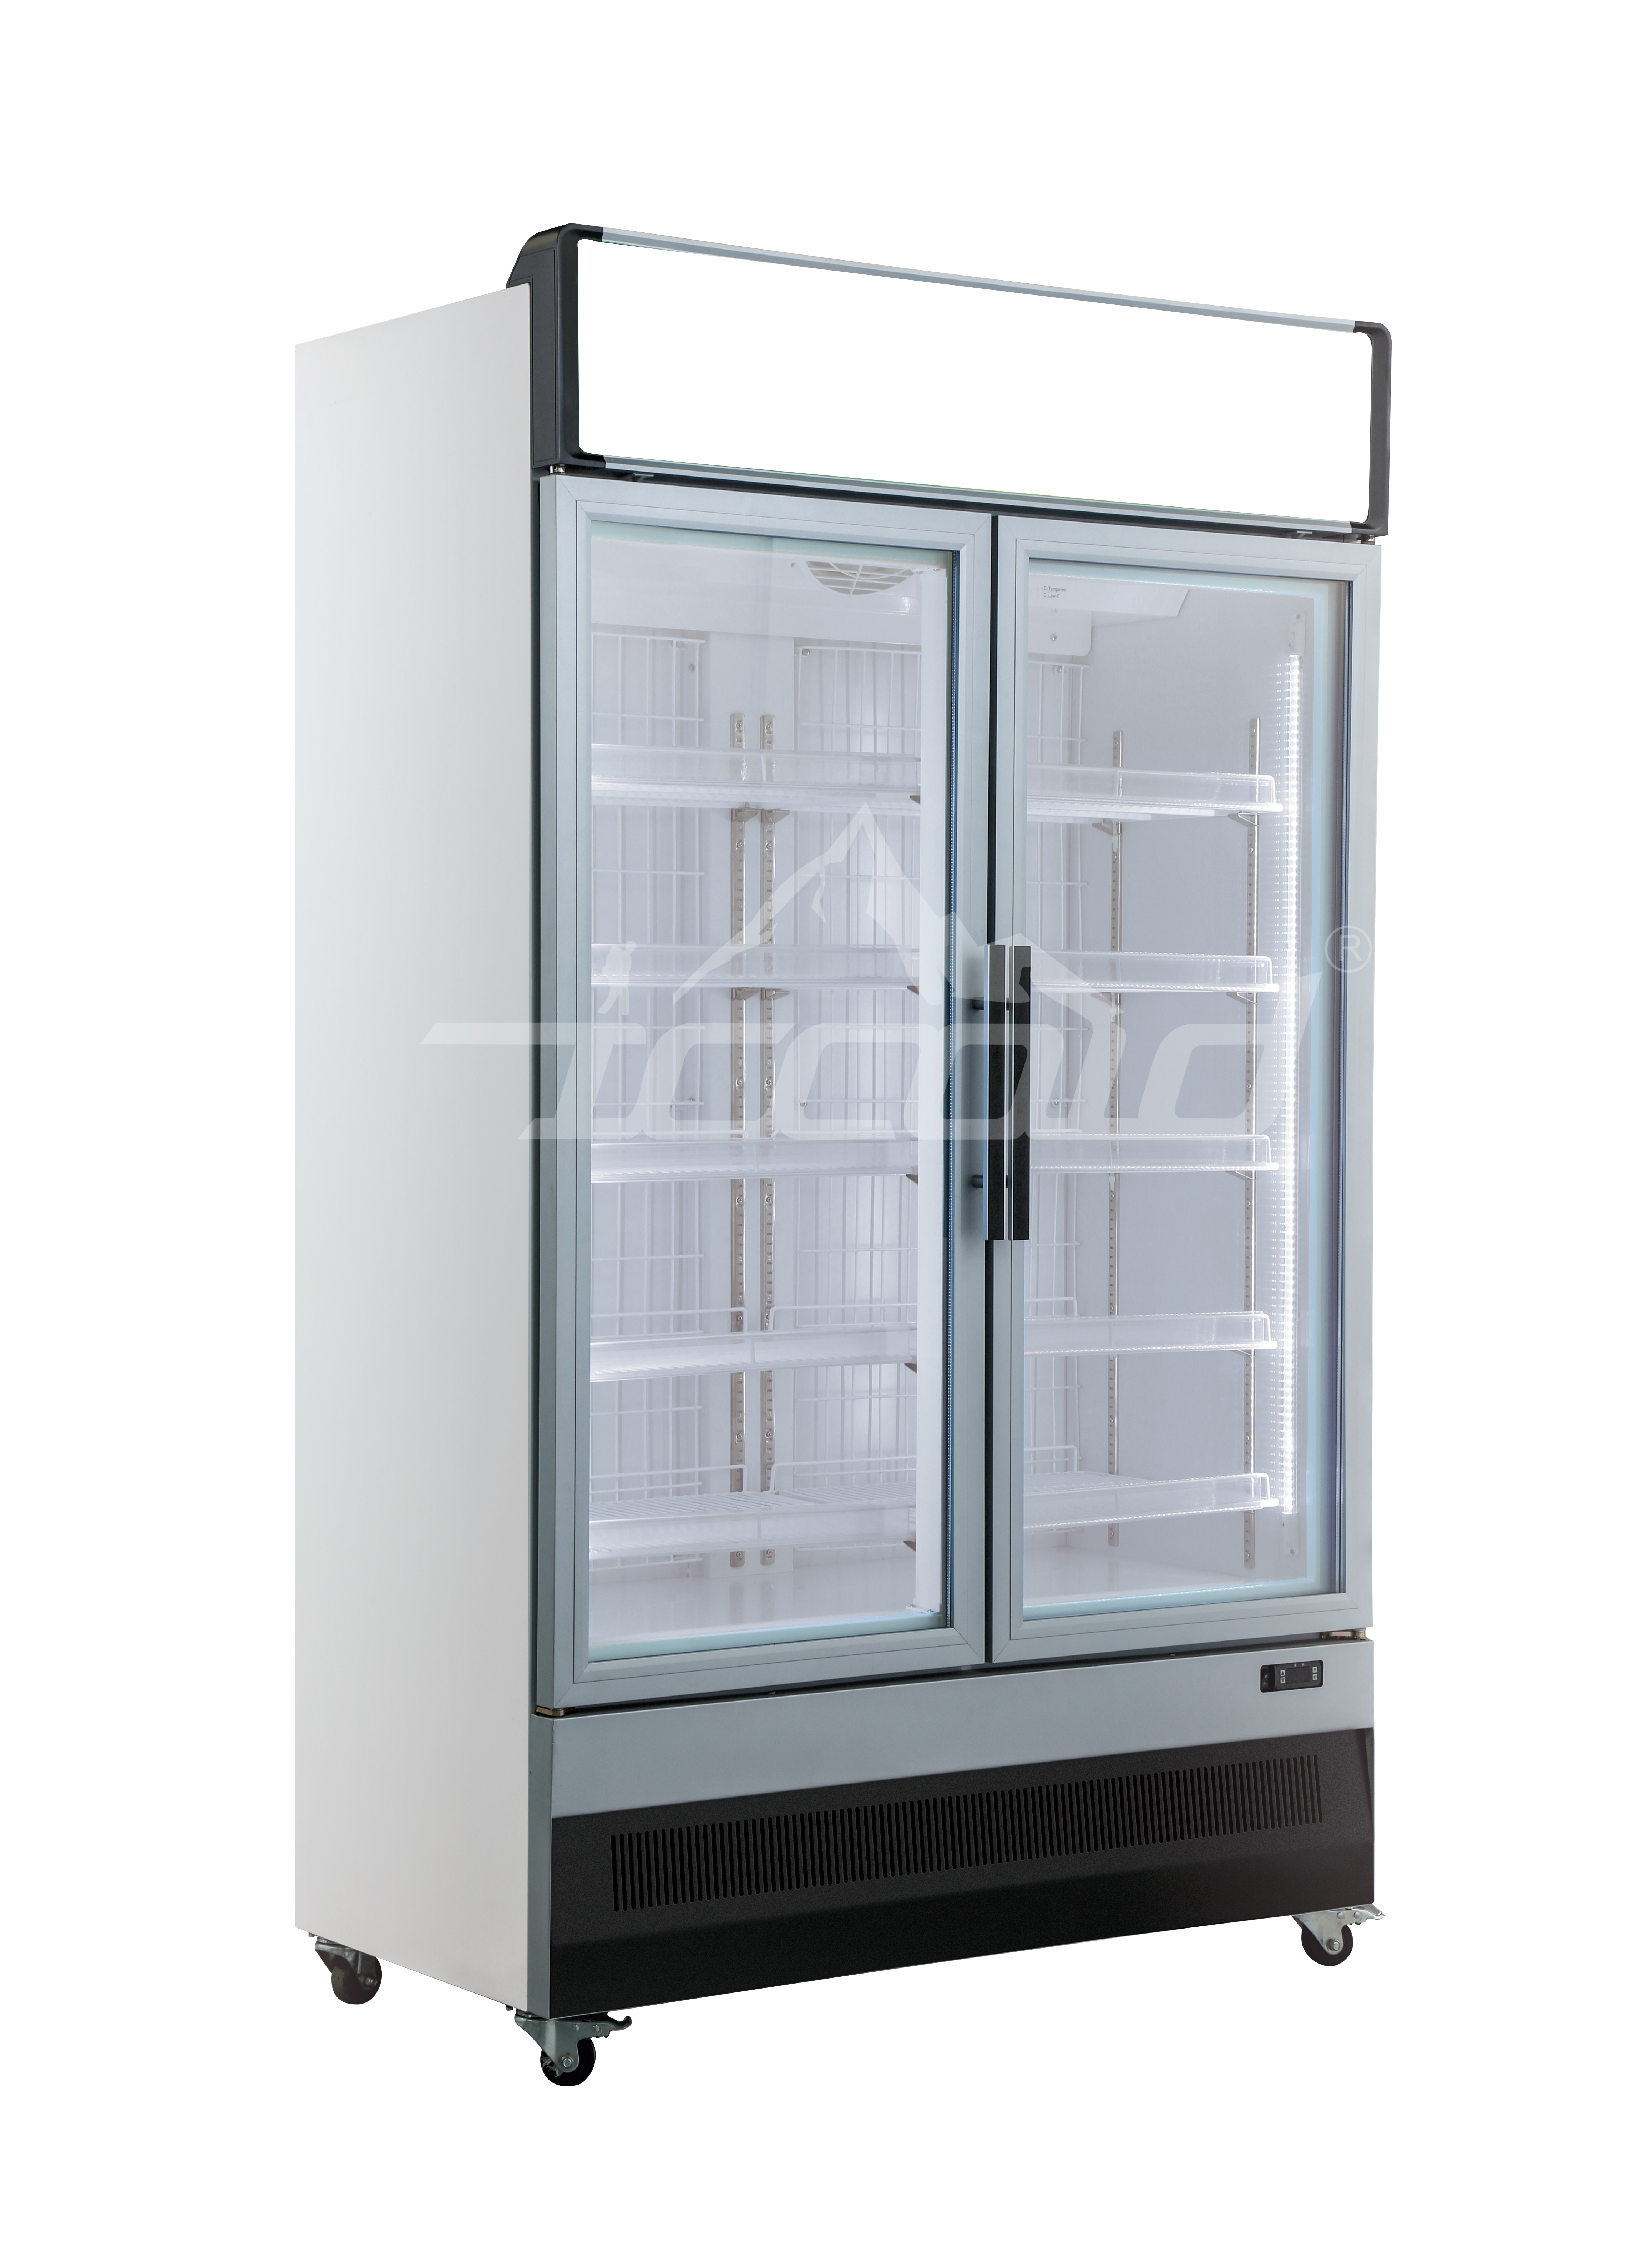 Vertical freezer 2door